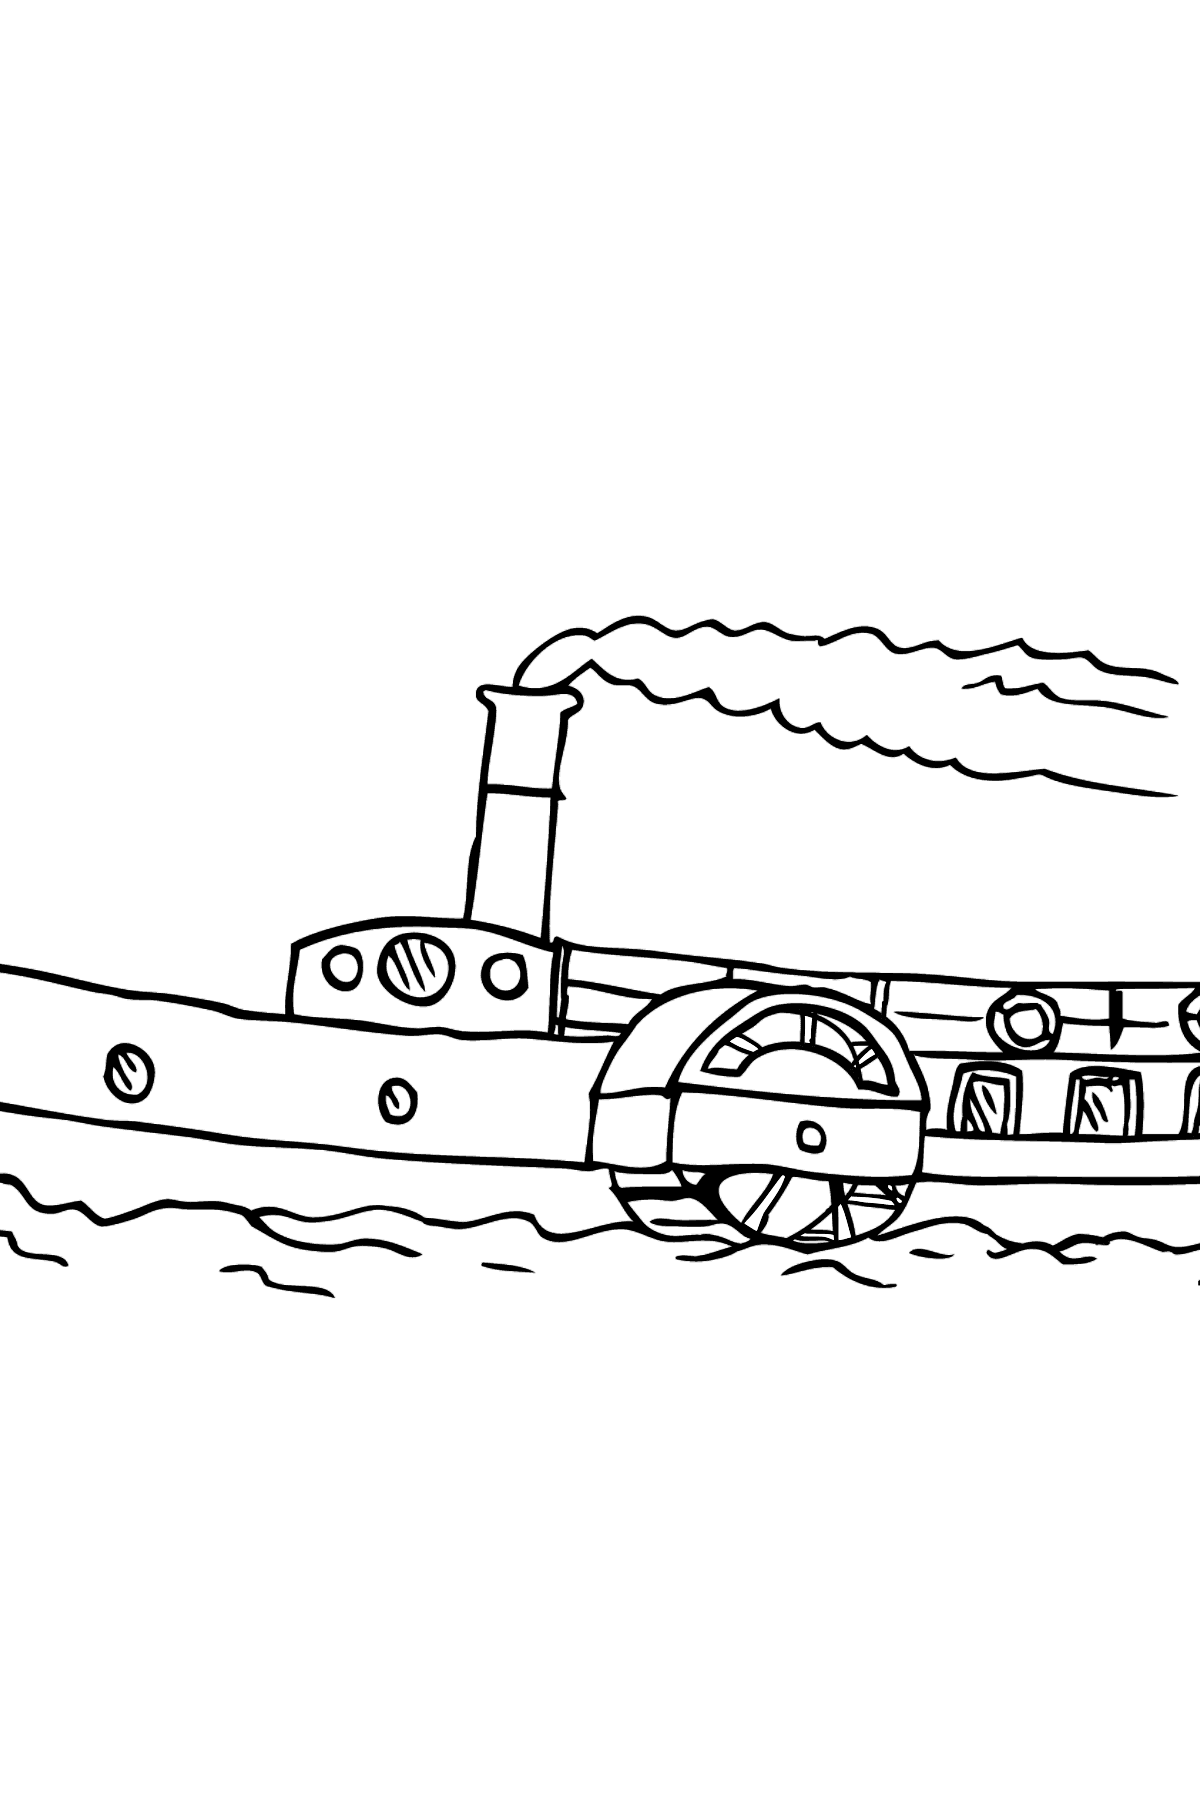 Раскраска Корабль с гребным колесом - Картинки для Детей